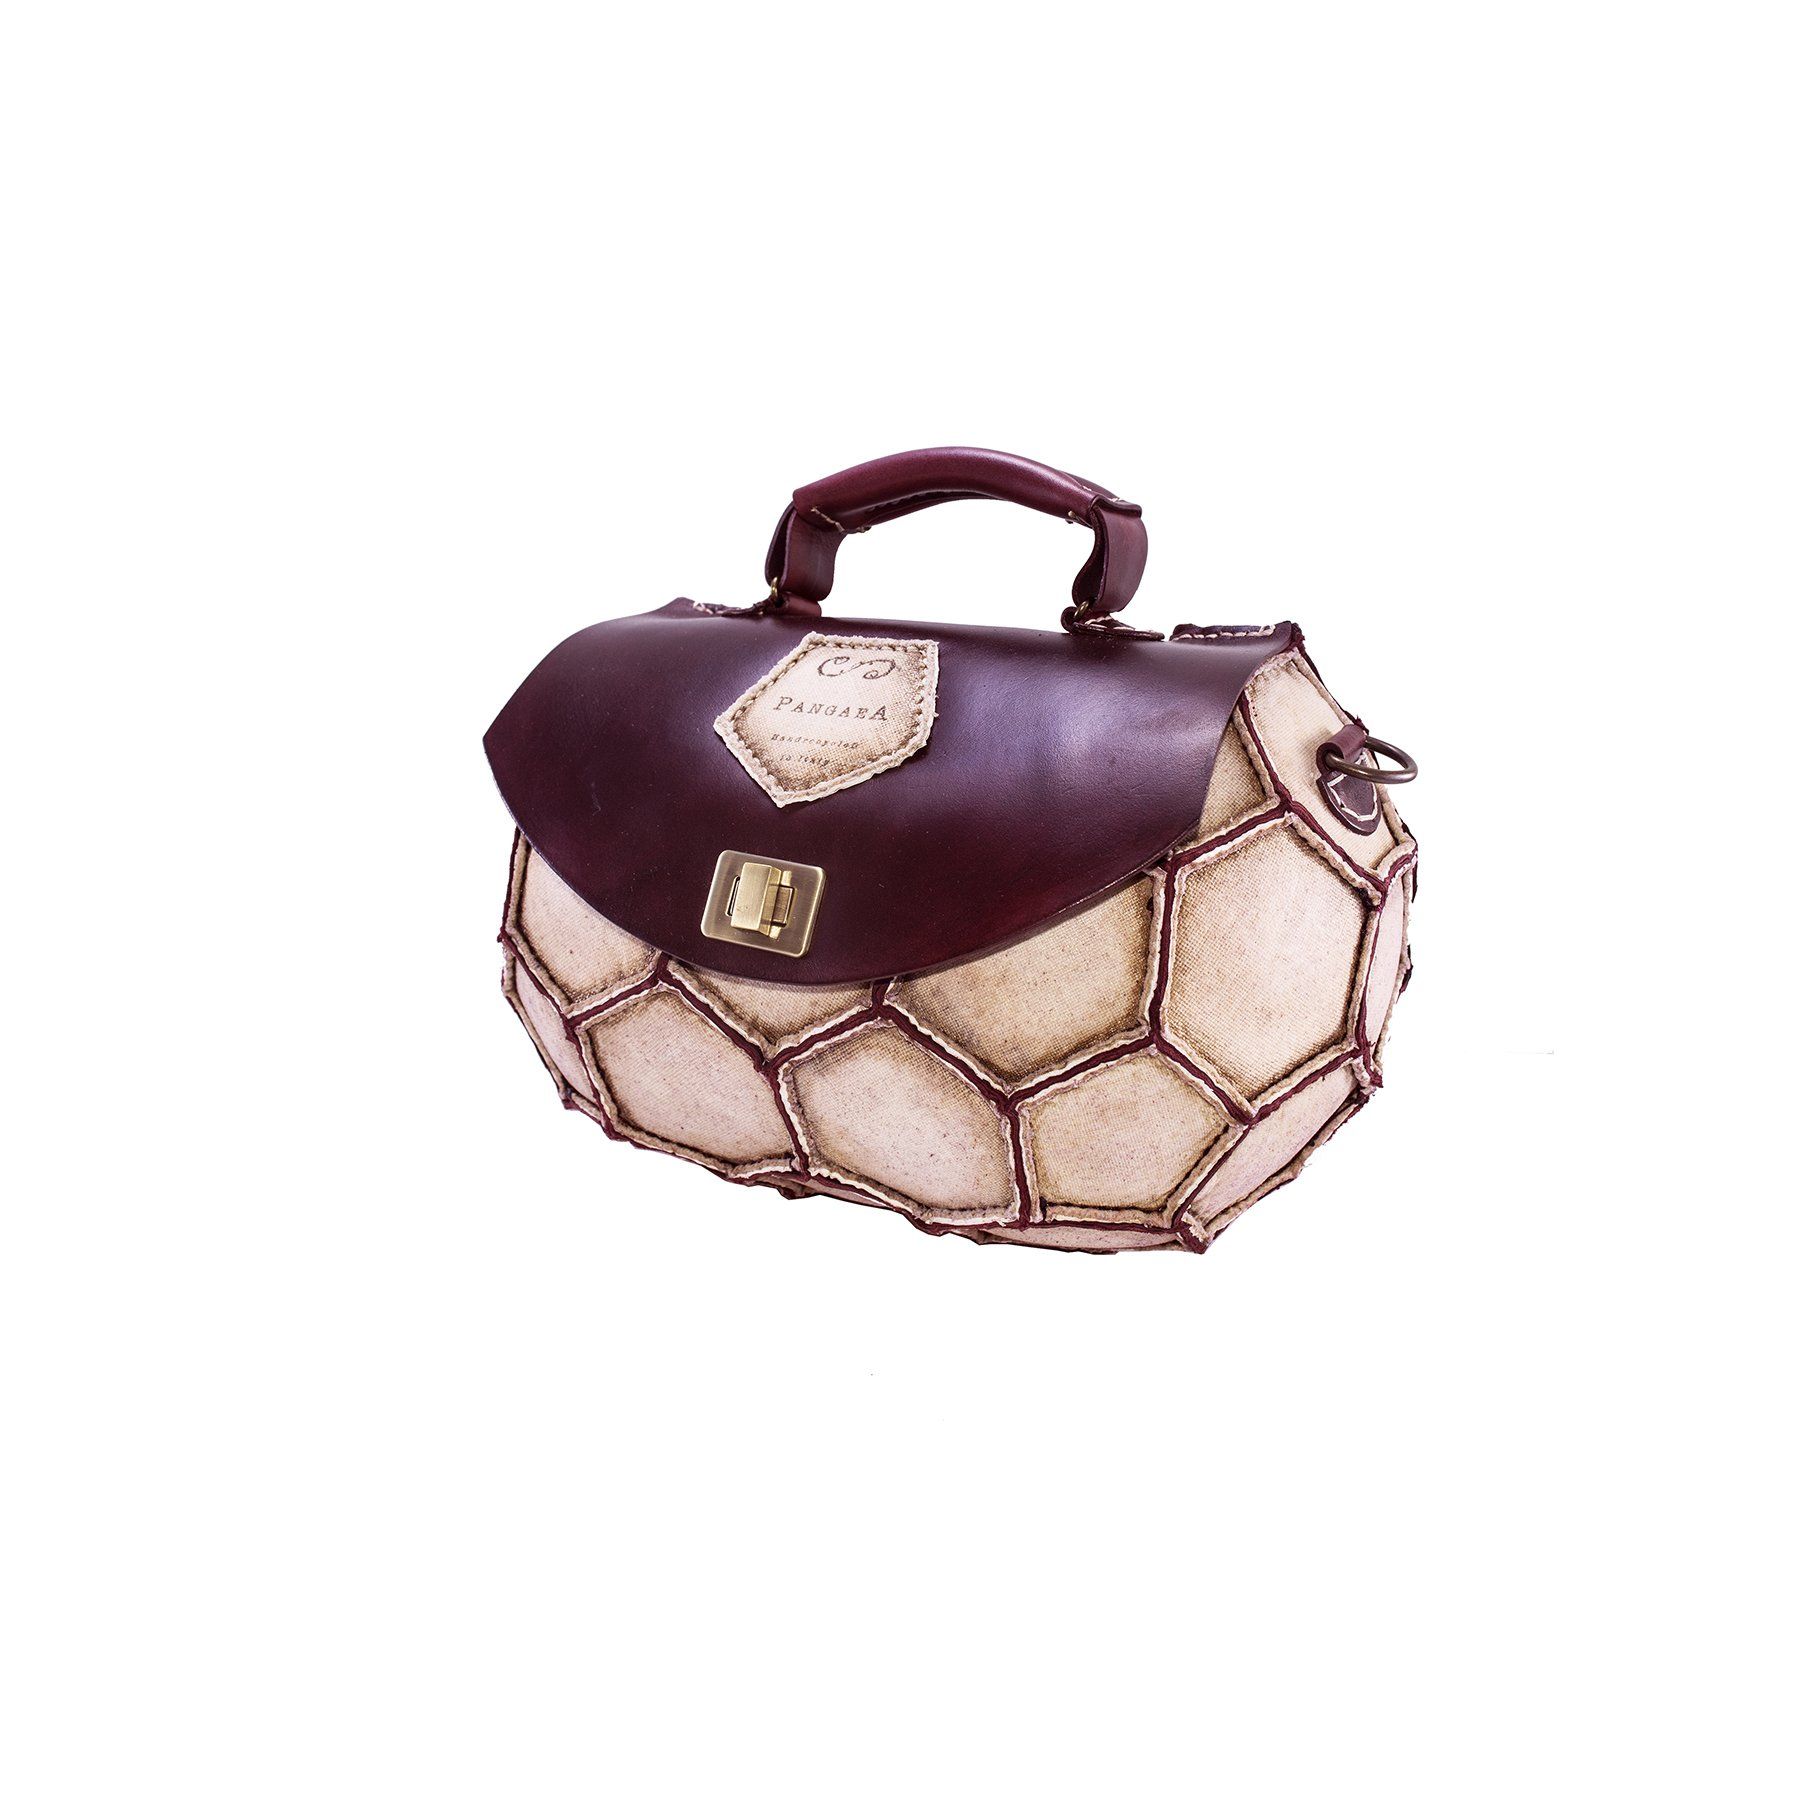 pangaea modello europa borsa bauletto riciclo pallone calcio in pelle e cuoio panna bordeaux moda etica